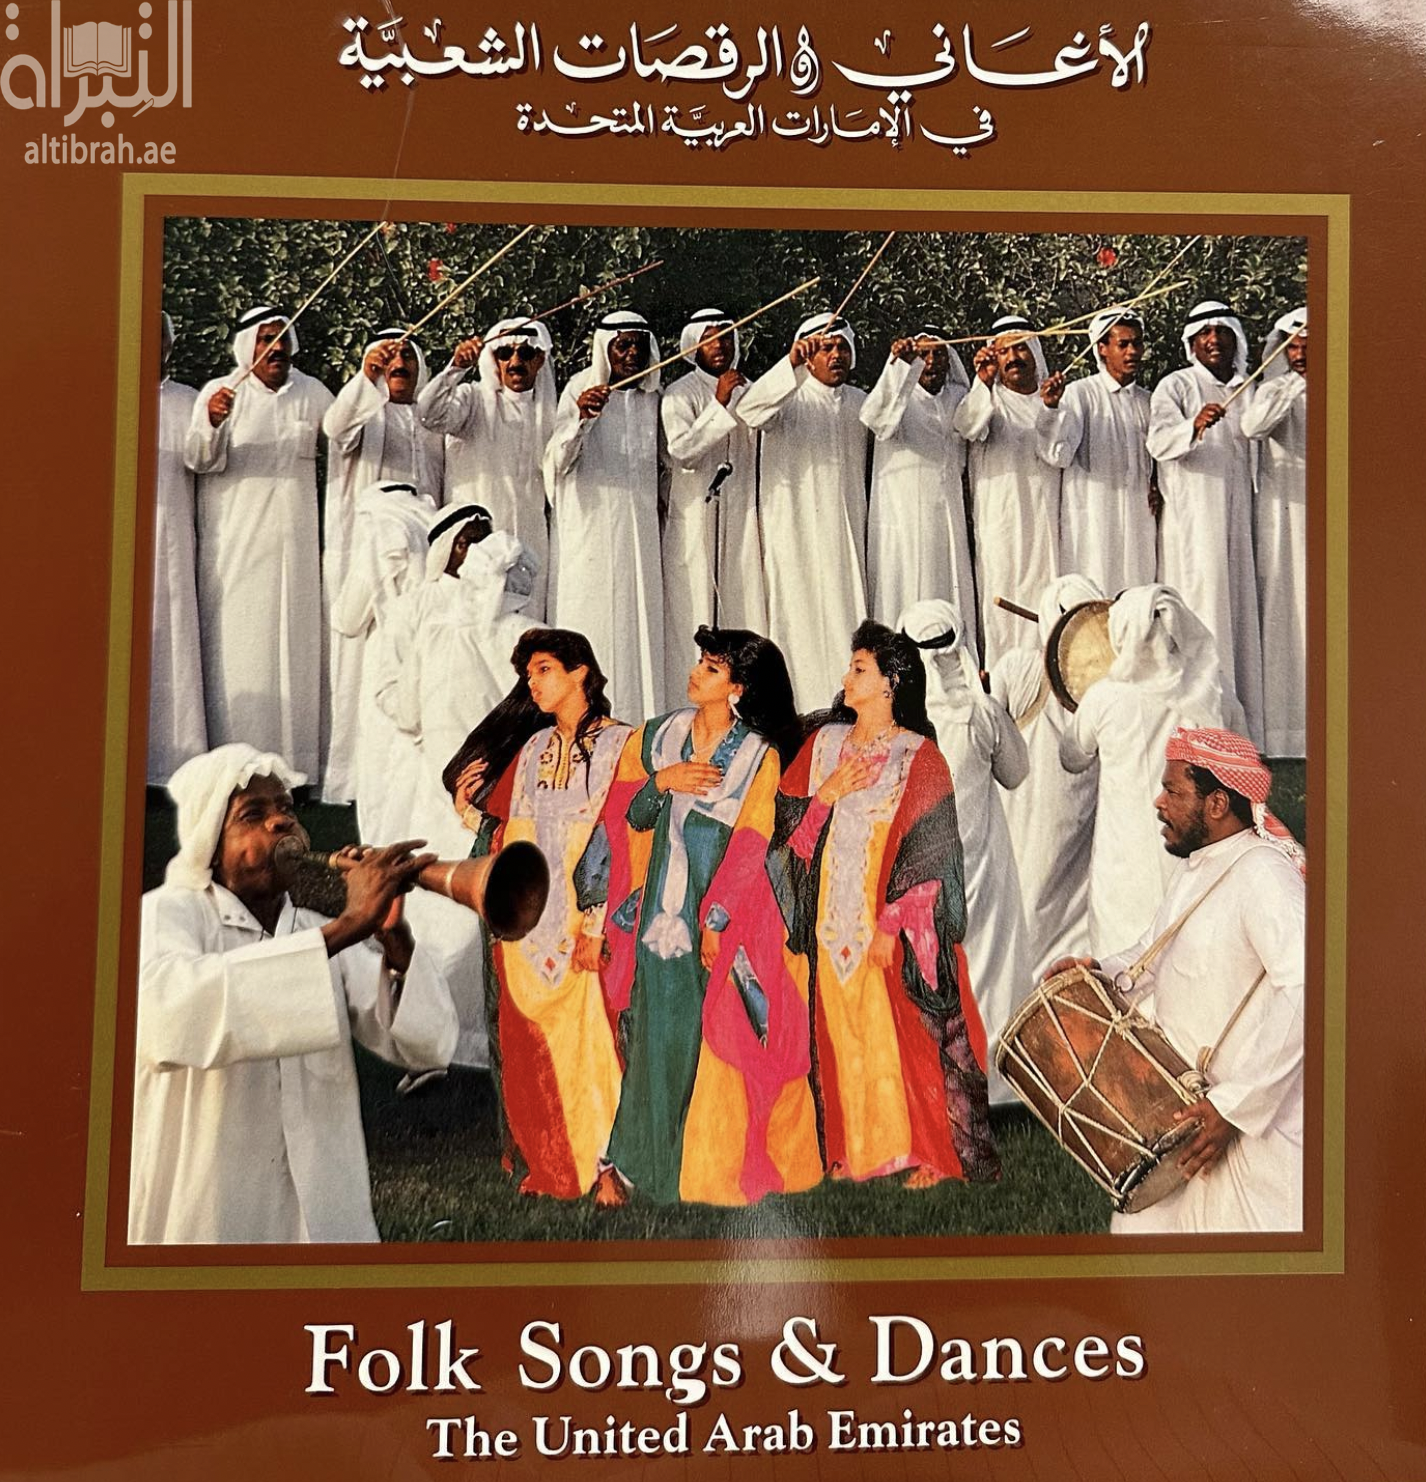 كتاب الأغاني والرقصات الشعبية في الإمارات العربية المتحدة Folk Songs & Dances - The United Arab Emirates